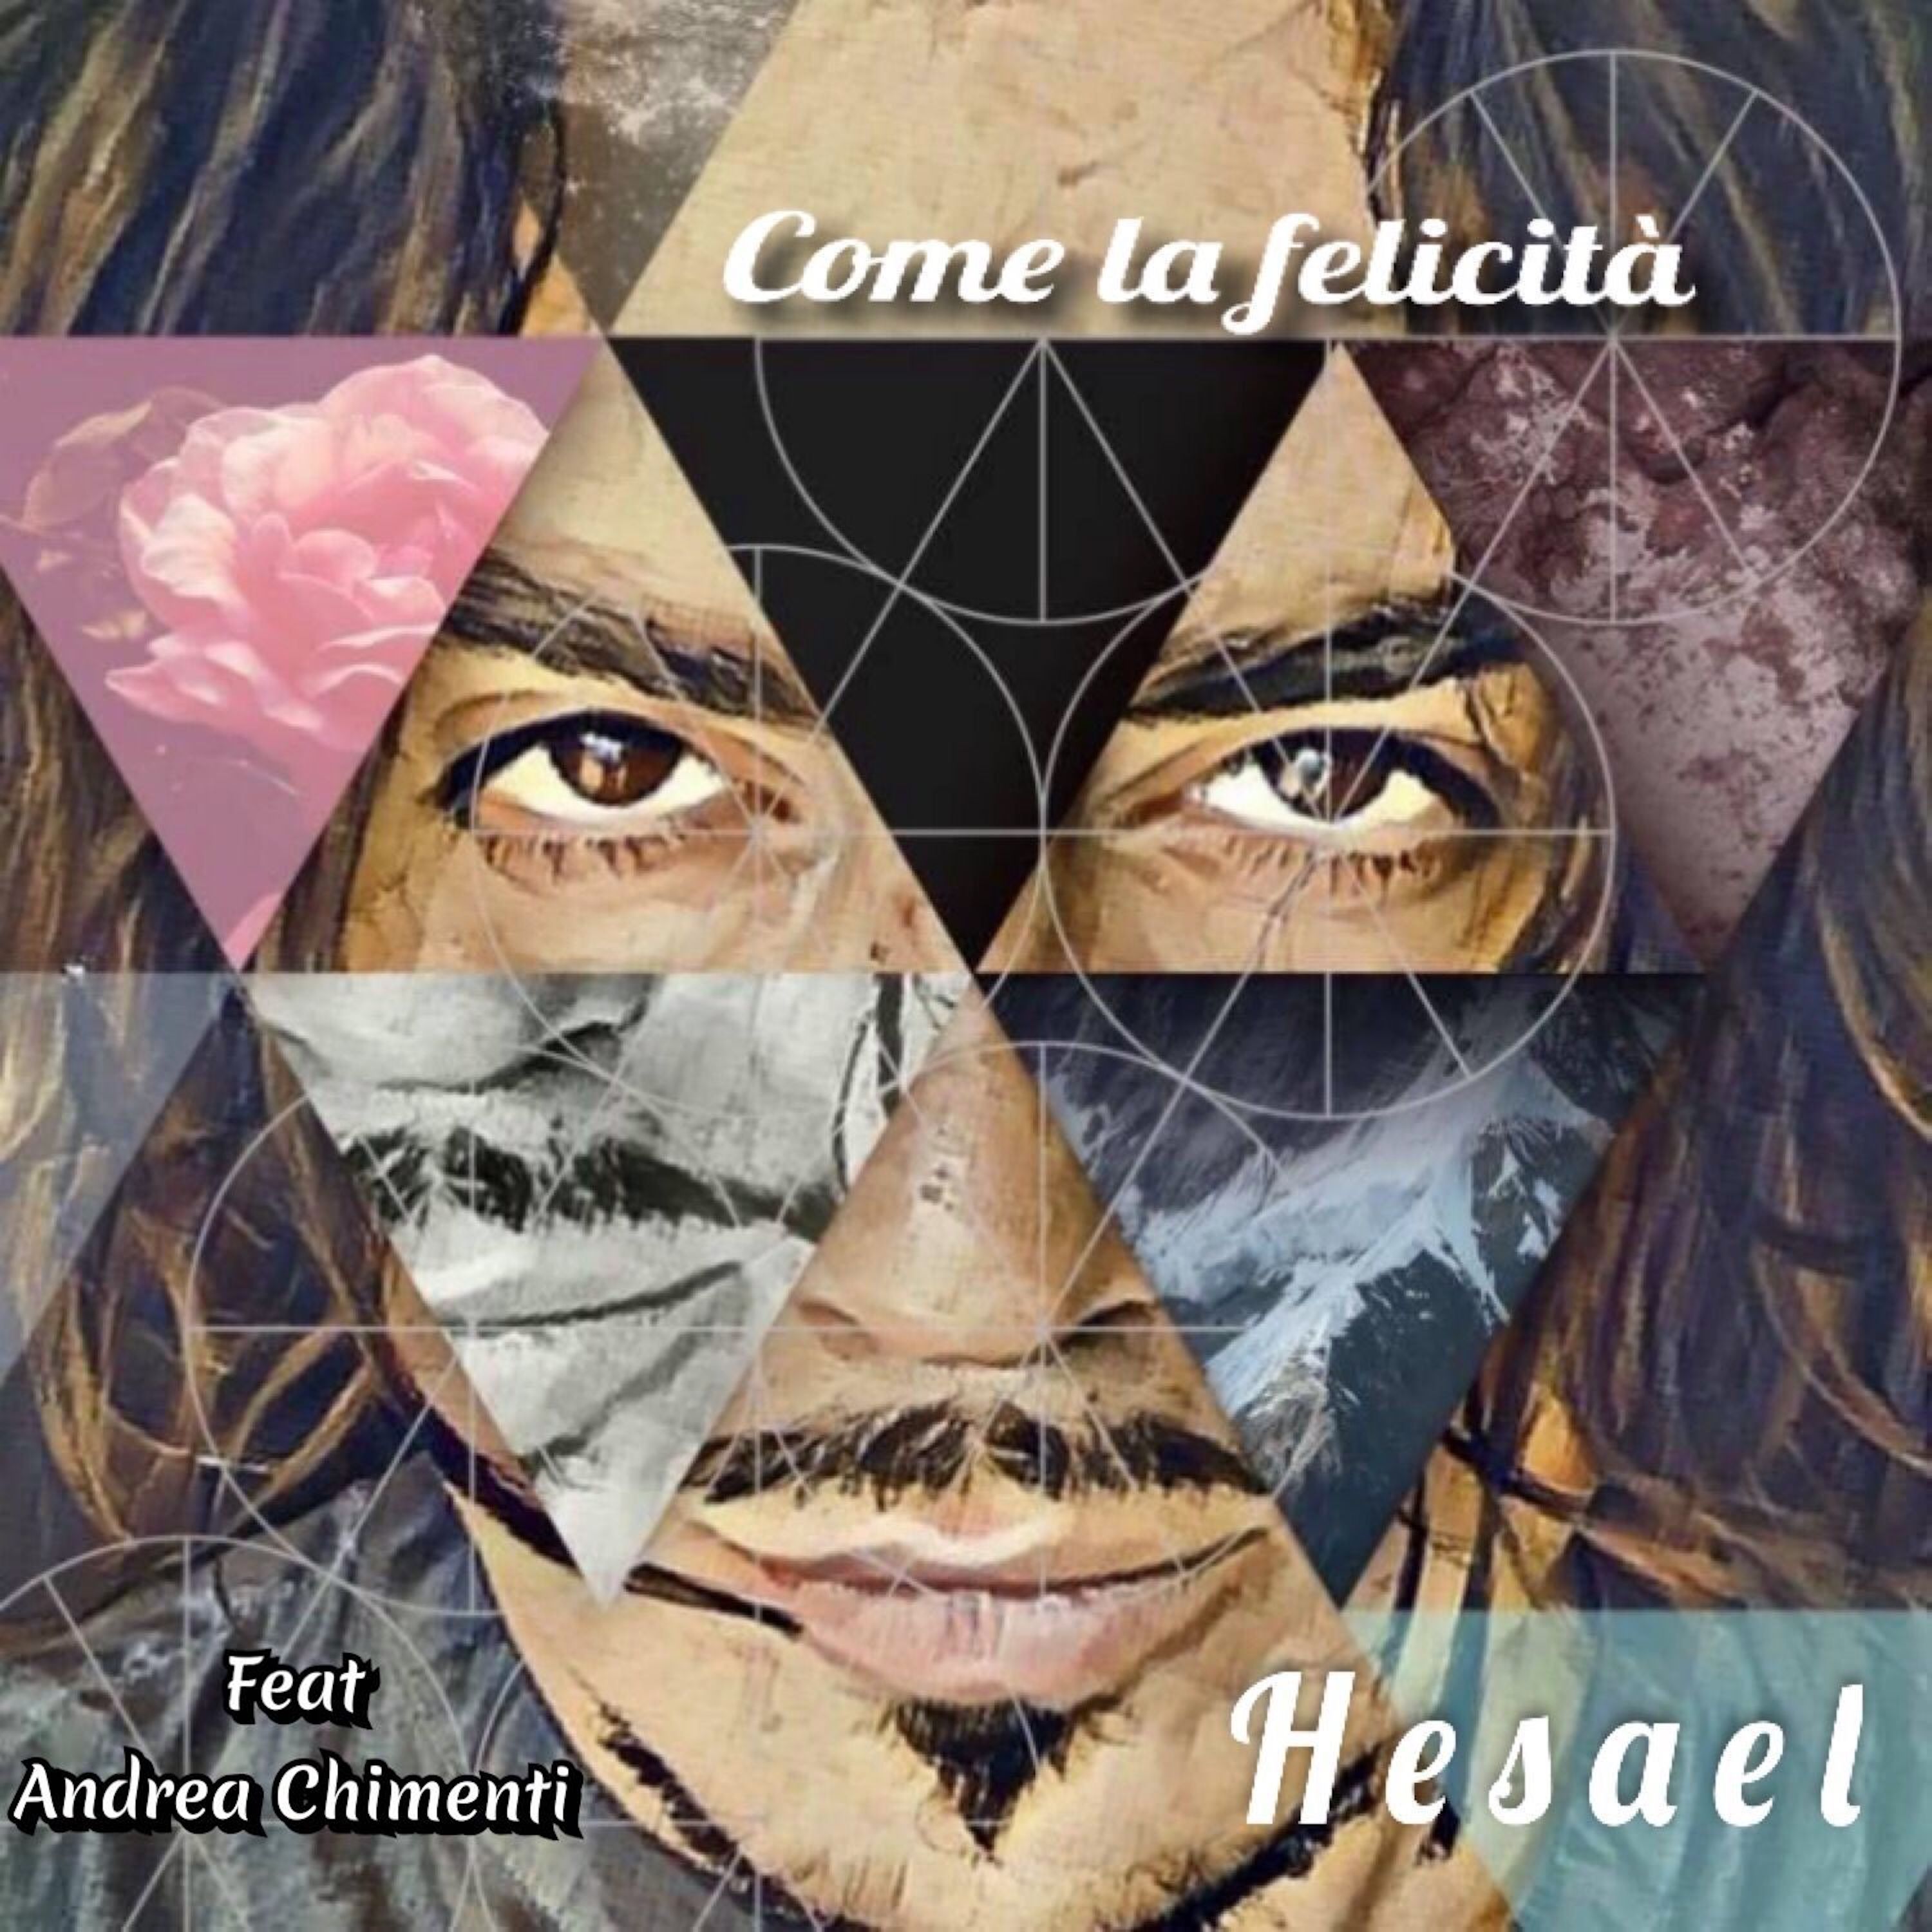 Nuovo singolo di Hesael con il featuring di Andrea Chimenti